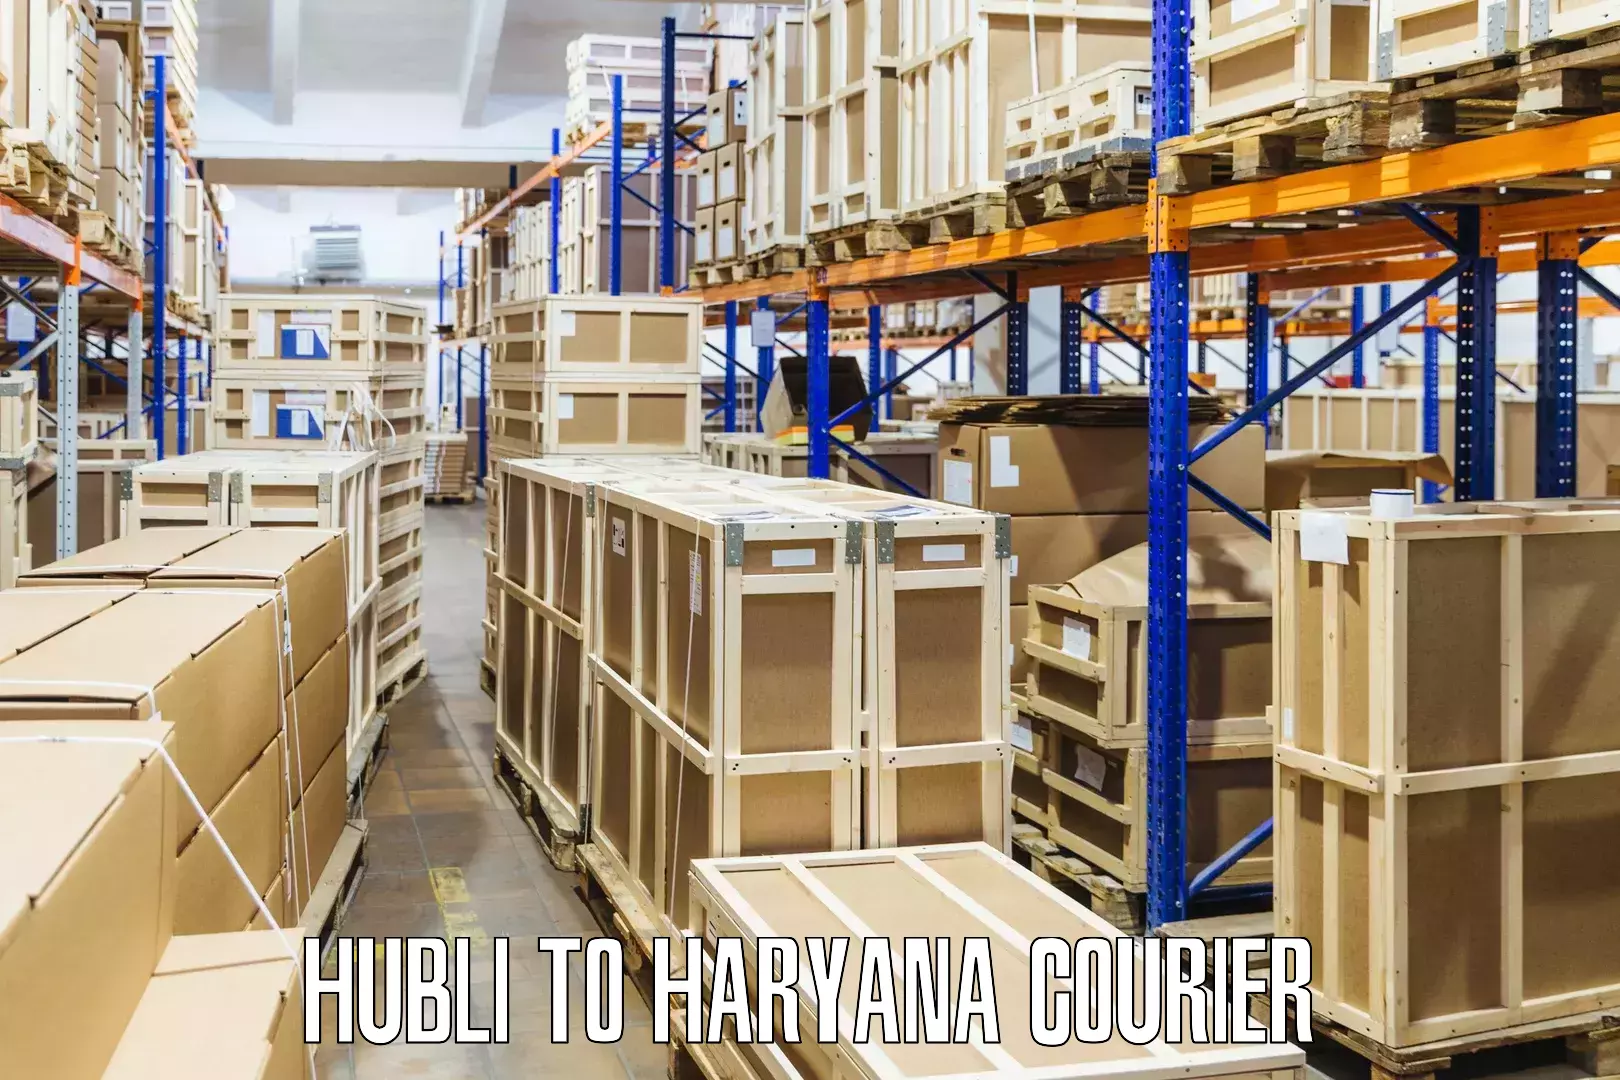 Doorstep delivery service Hubli to Narwana